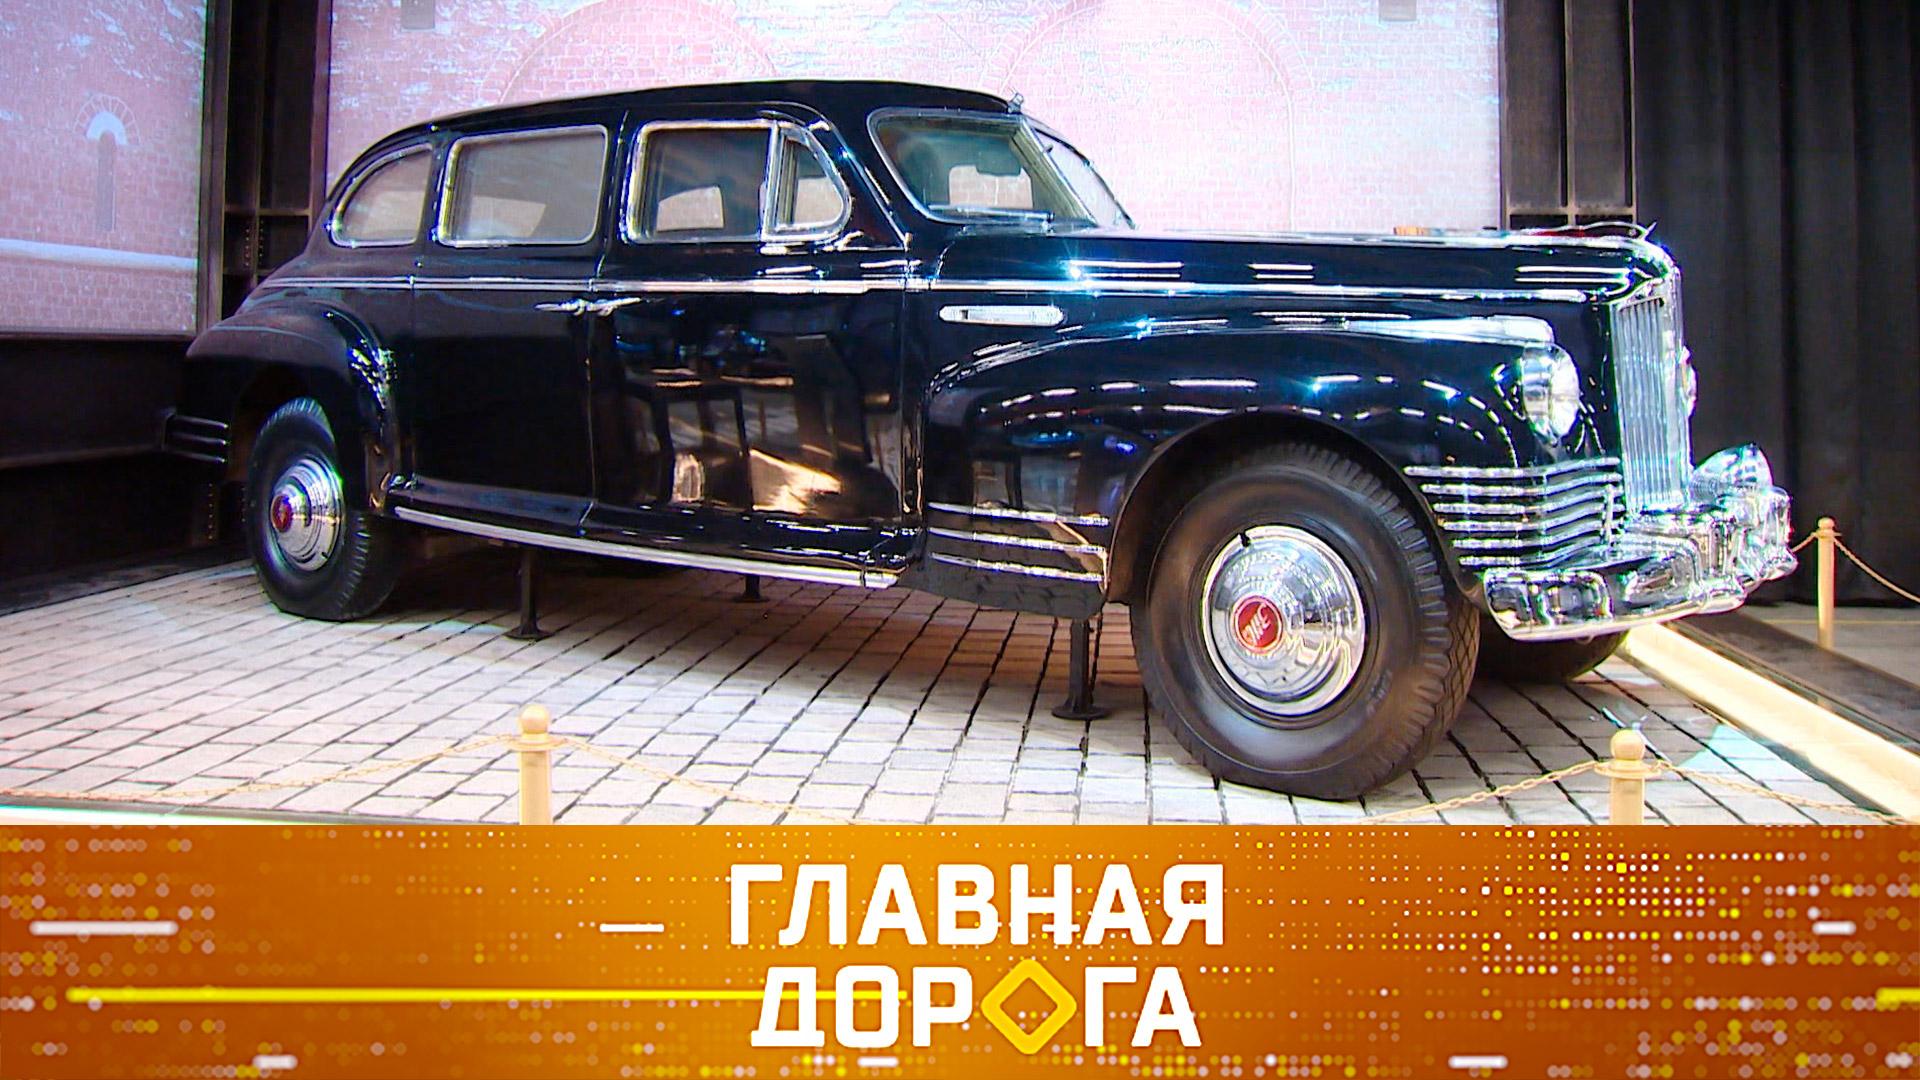 Лимузин Сталина, штрафы со смартфона икак пережить летнюю жару вмашине | Главная дорога